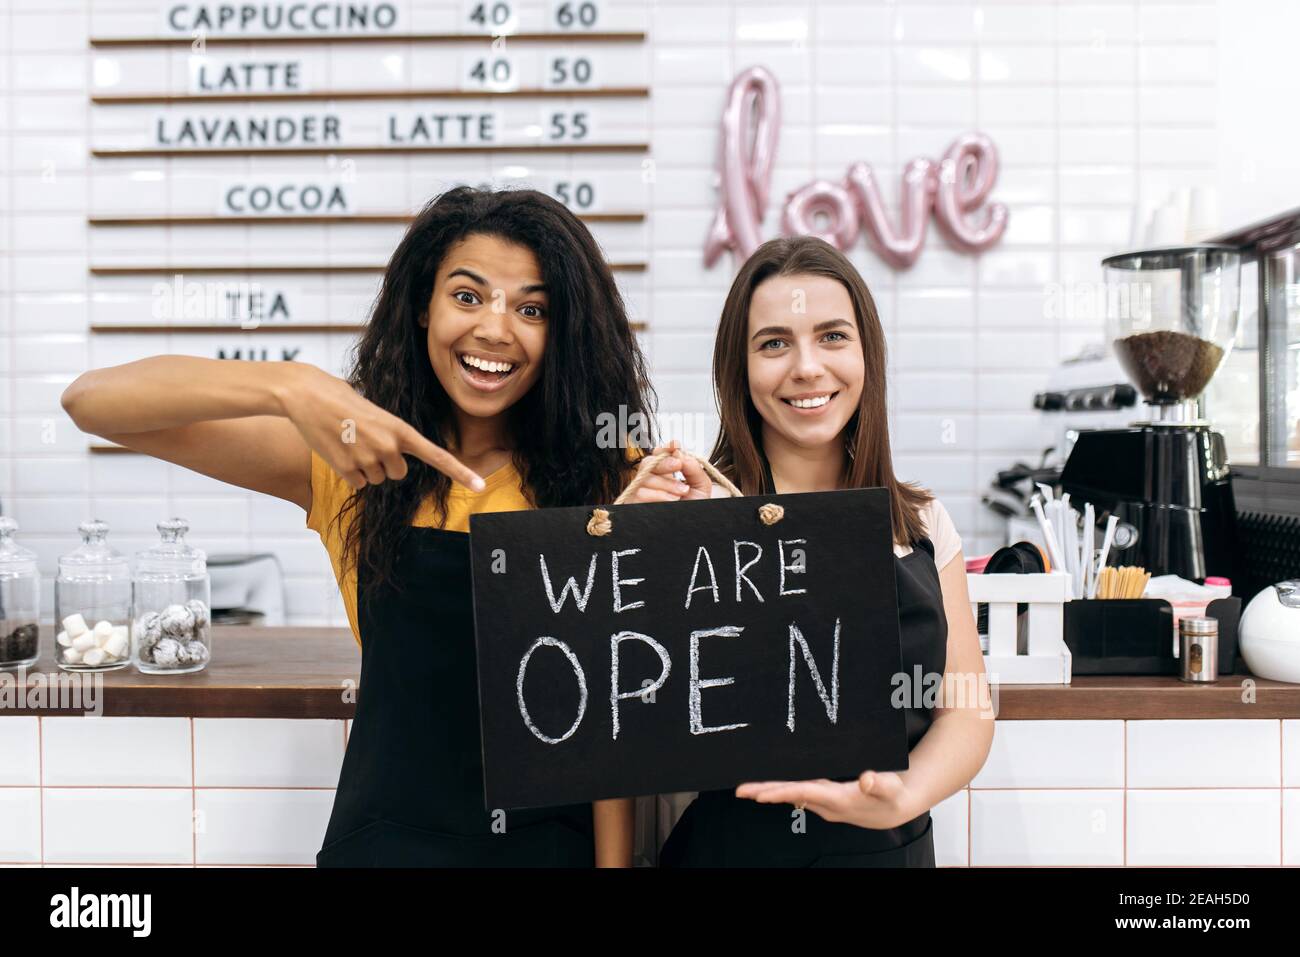 Zwei zufriedene weibliche Kellnerin ein Café oder Restaurant, afroamerikanisch und kaukasisch, steht mit einem Schild, DAS WIR IN der Nähe der Theke öffnen und freundlich lächeln Stockfoto